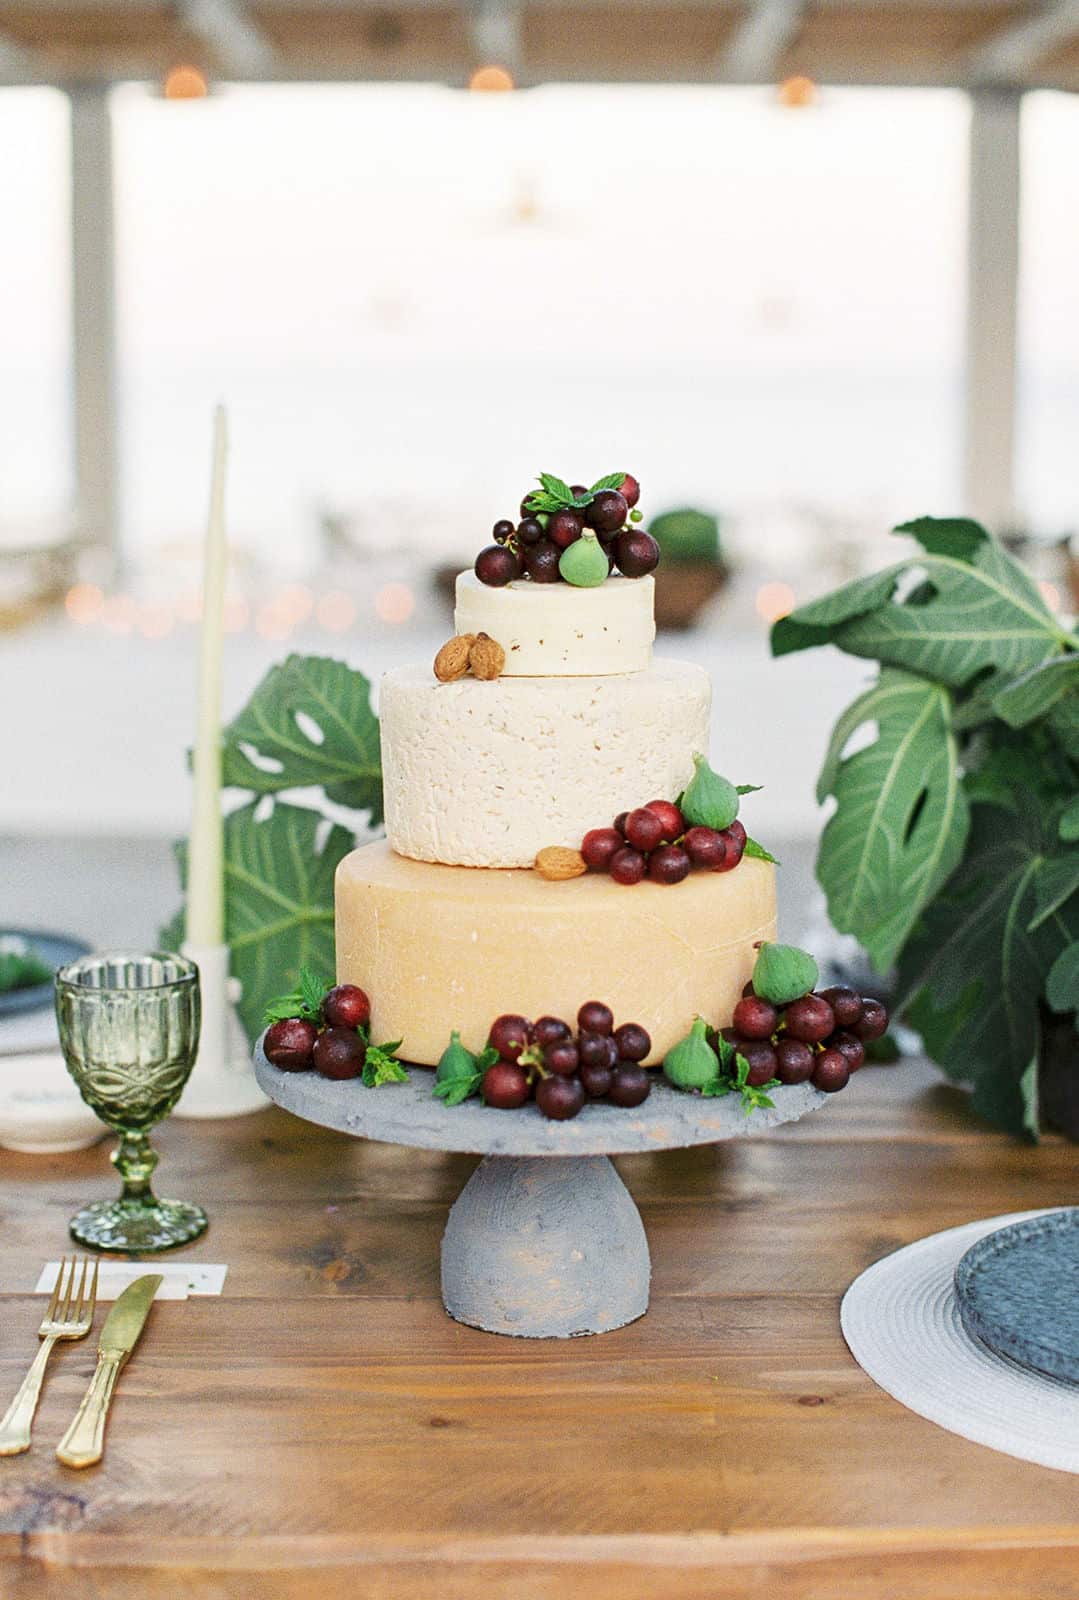 TRUE SWEET ROMANCE.... Wedding Cake on The Greek Coast ! - CakesDecor